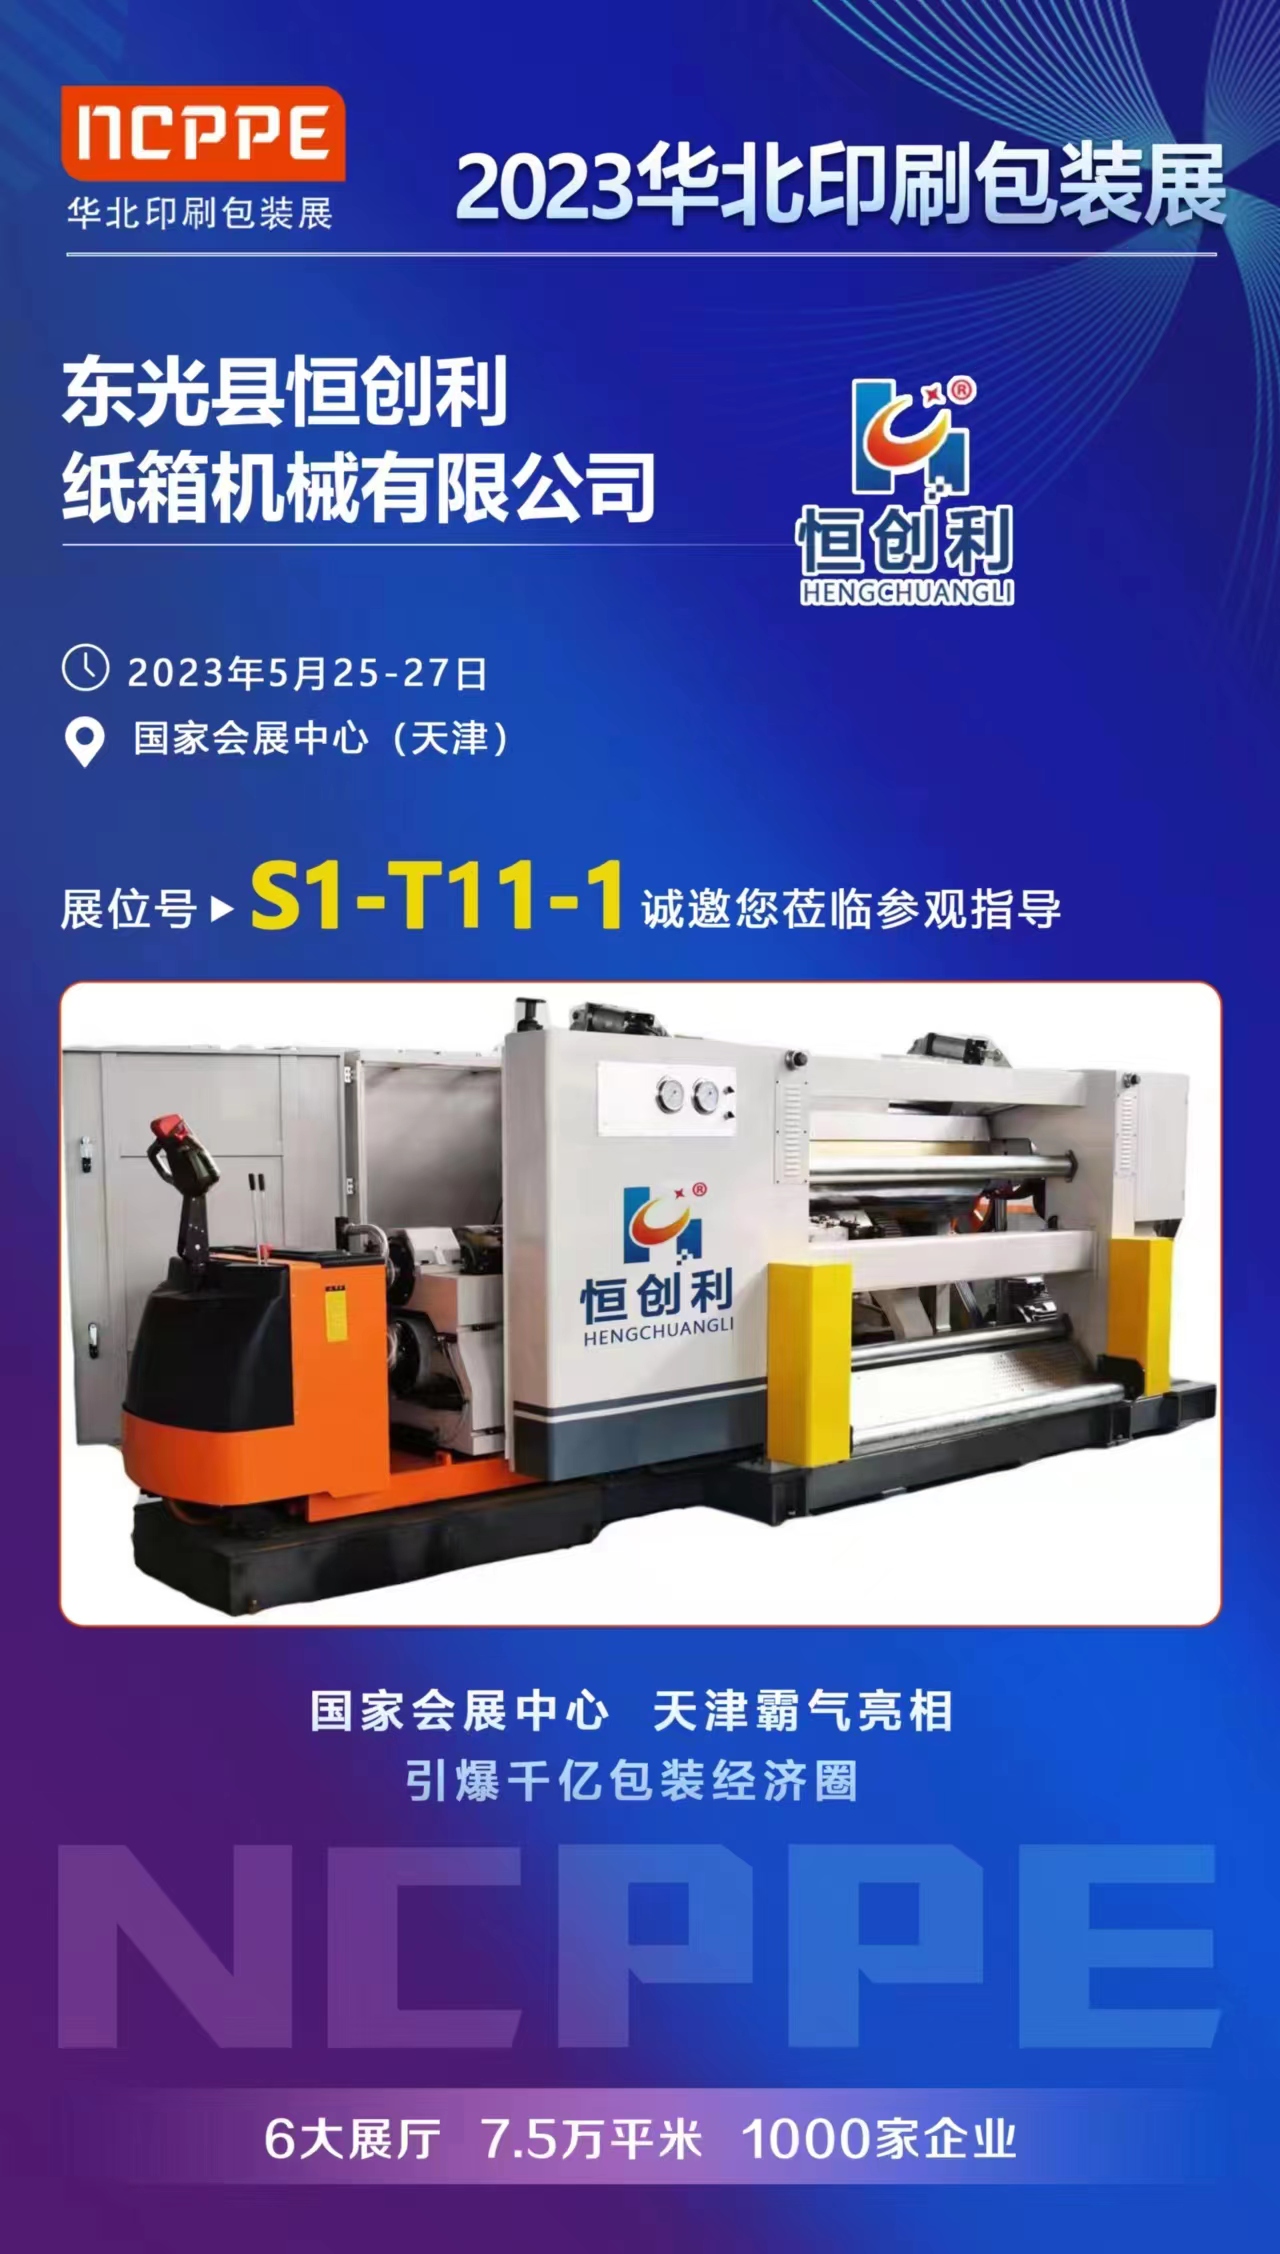 Welcome to Dongguang Hengchuangli Carton Machinery Co., LTD